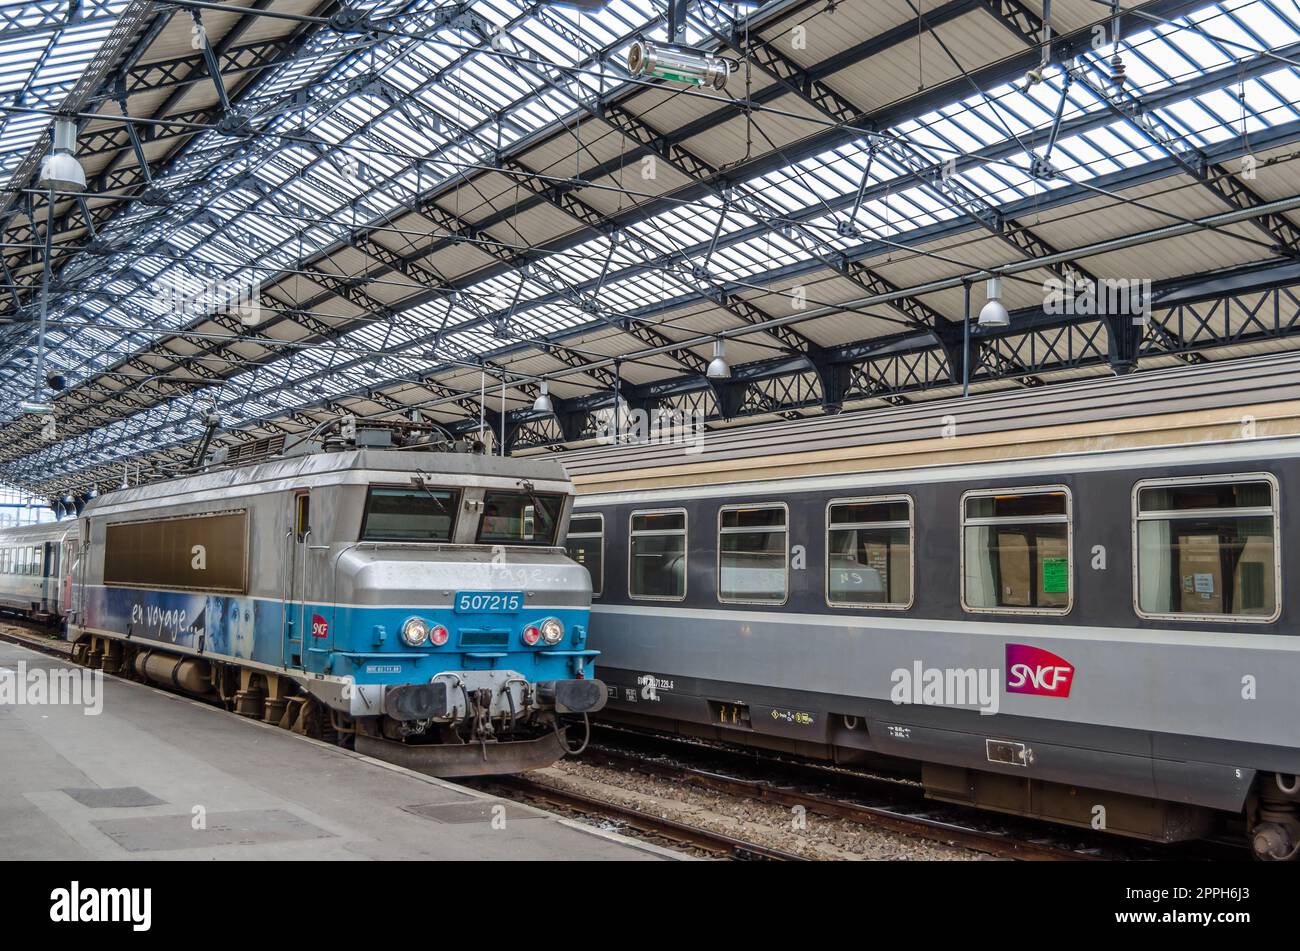 HENDAYE, FRANKREICH - 16. AUGUST 2013: Züge am Bahnhof Hendaye im Süden Frankreichs, einem Grenzanschlusspunkt zu Spanien Stockfoto